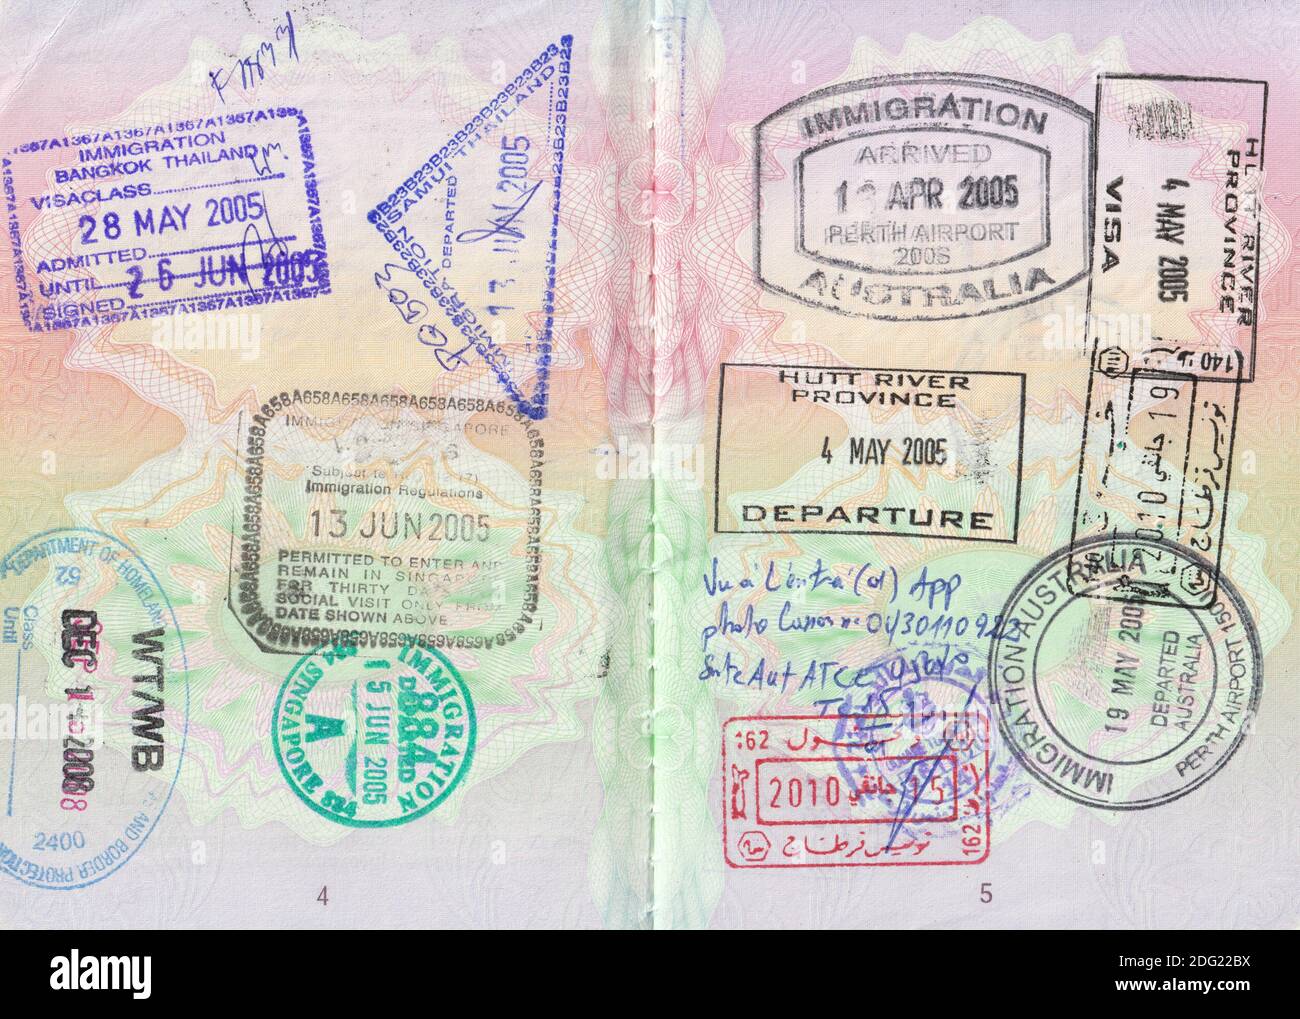 Britische Passseiten mit Briefmarken aus den USA, Thailand, Singapur, Australien, Tunesien und der Provinz Hutt River (siehe Beschreibung für alle Details) Stockfoto